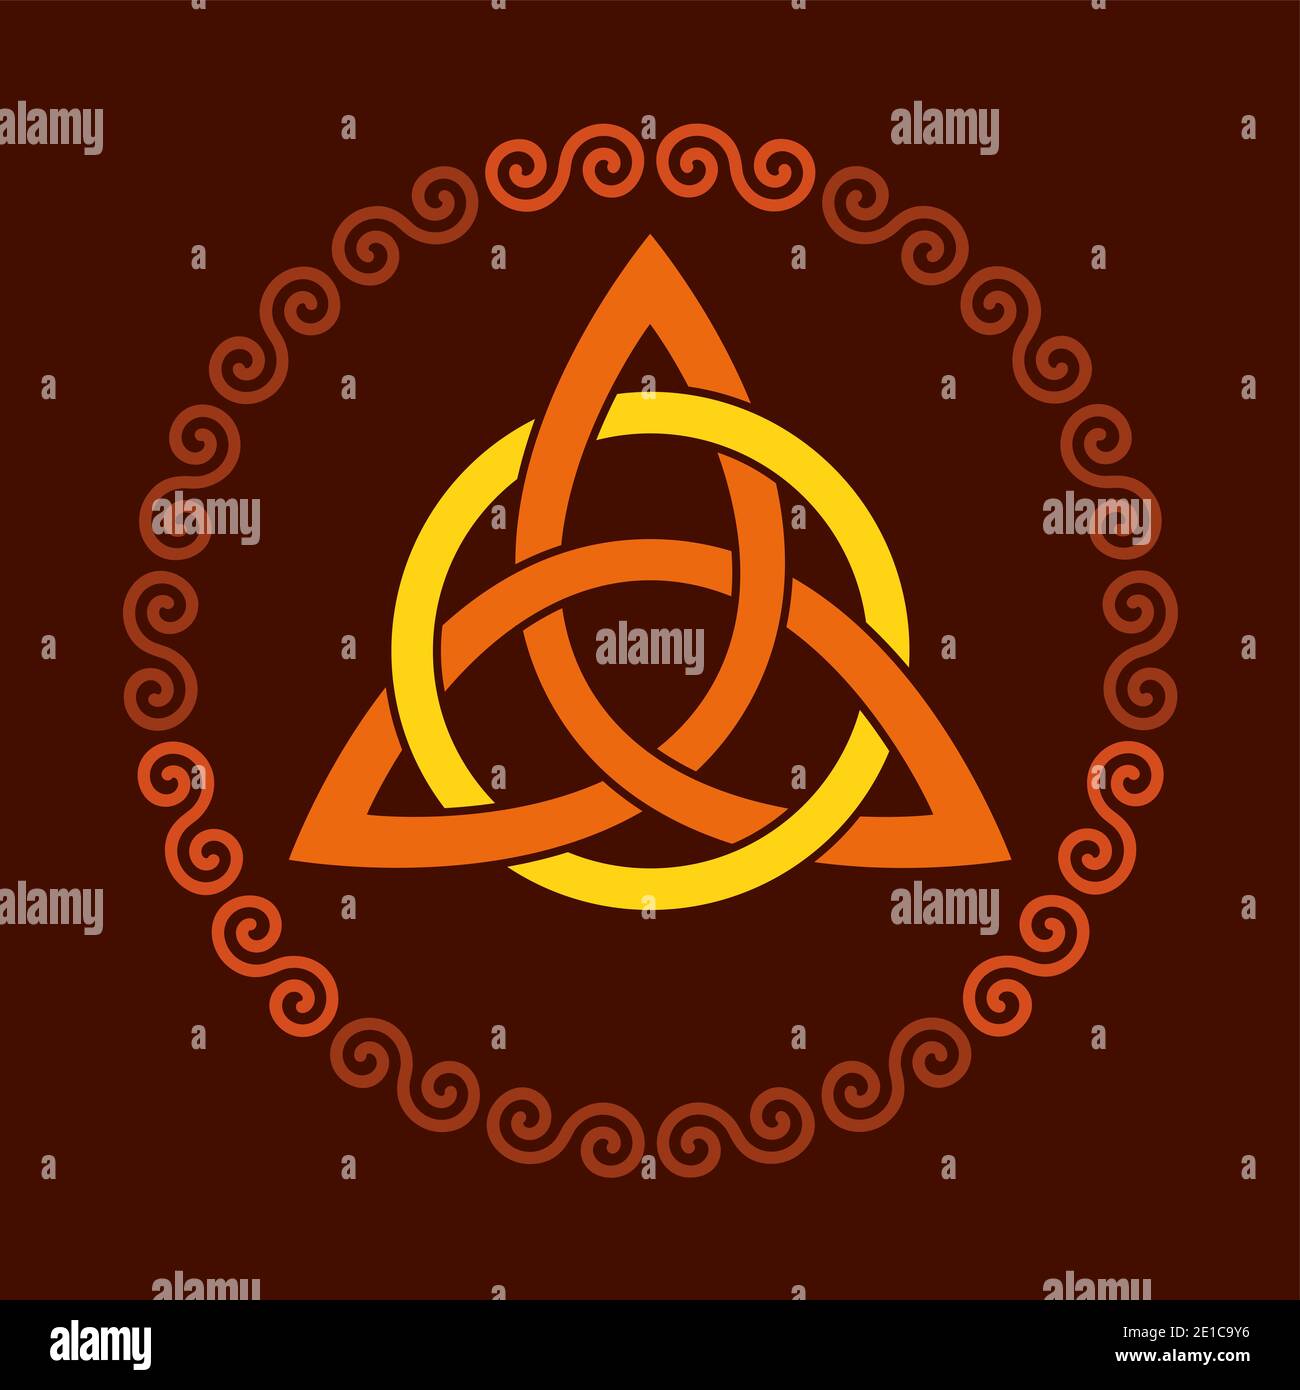 Farbige Triquetra mit Kreis, innerhalb eines kreisförmigen Spiralrahmens. Dreieckiger keltischer Knoten, eine Figur, die in der antiken christlichen Ornamentik verwendet wird. Stockfoto